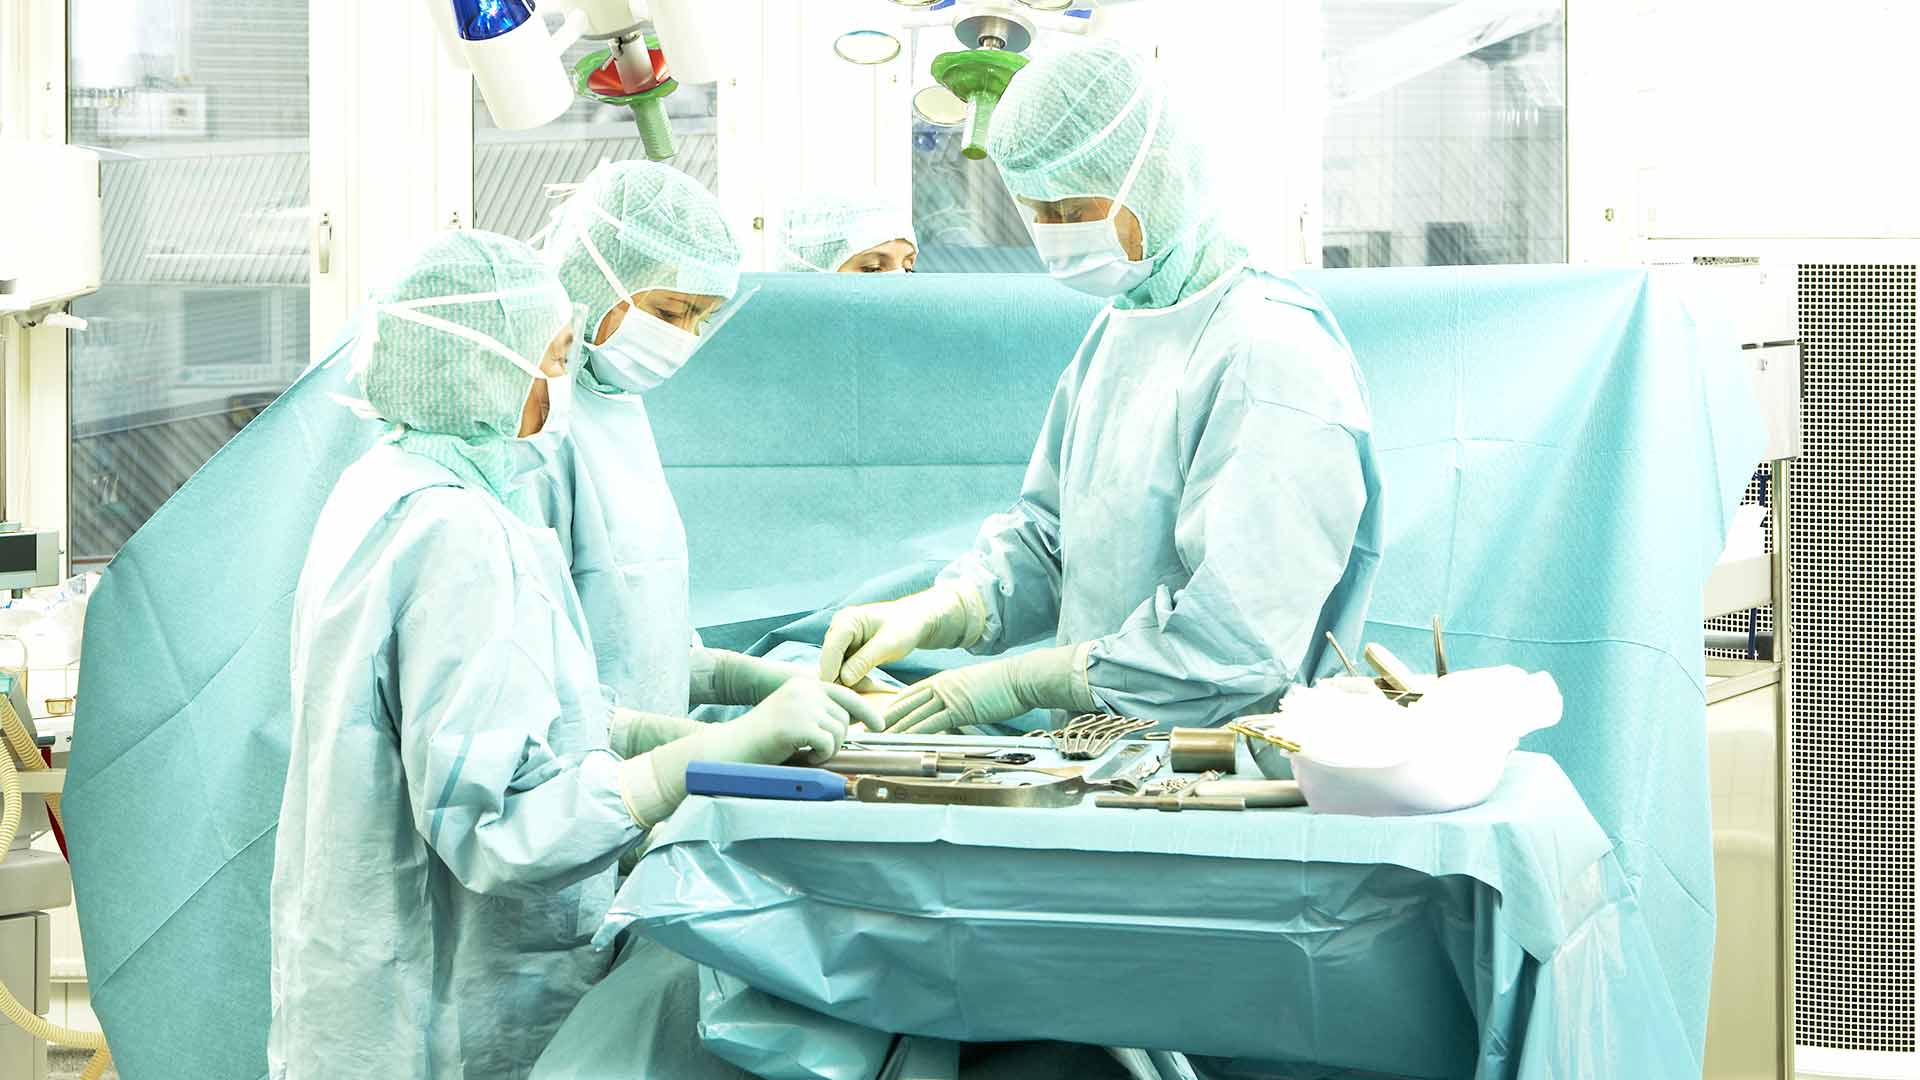 artsen in operatiekamer die chirurgische instrumenten voorbereiden